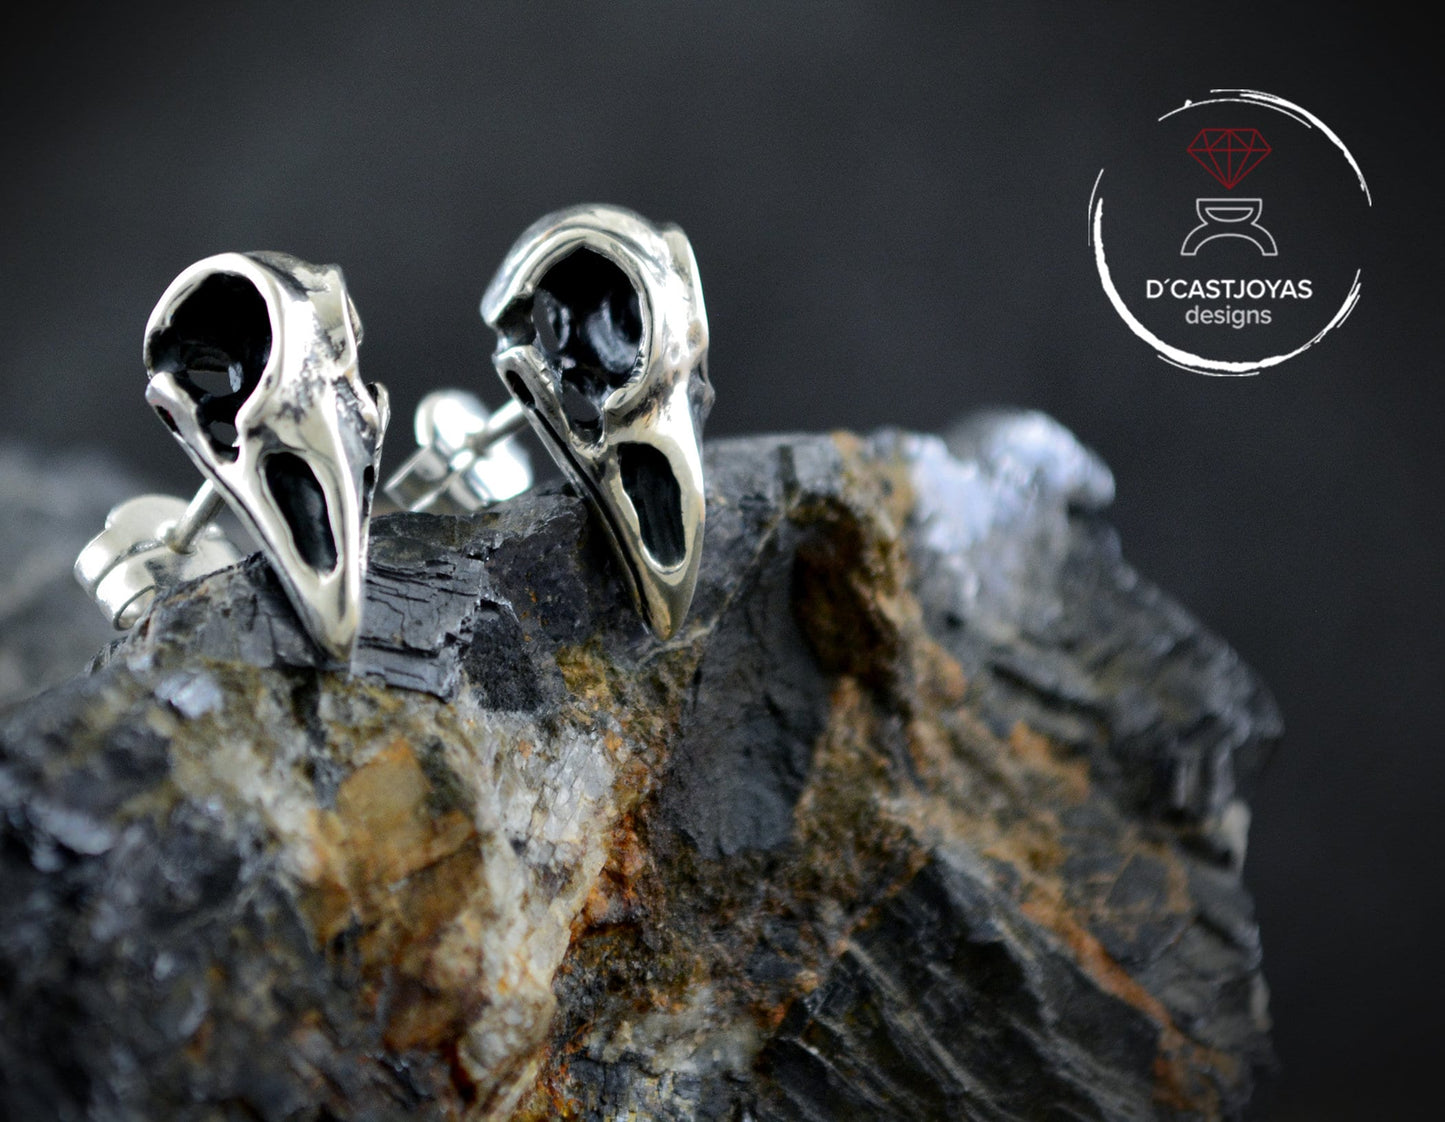 Odins Raben-Ohrringe aus massivem Sterlingsilber mit oxidierten Texturen, Vogelschädel-Ohrring, Geschenk für Gothic-Freundin